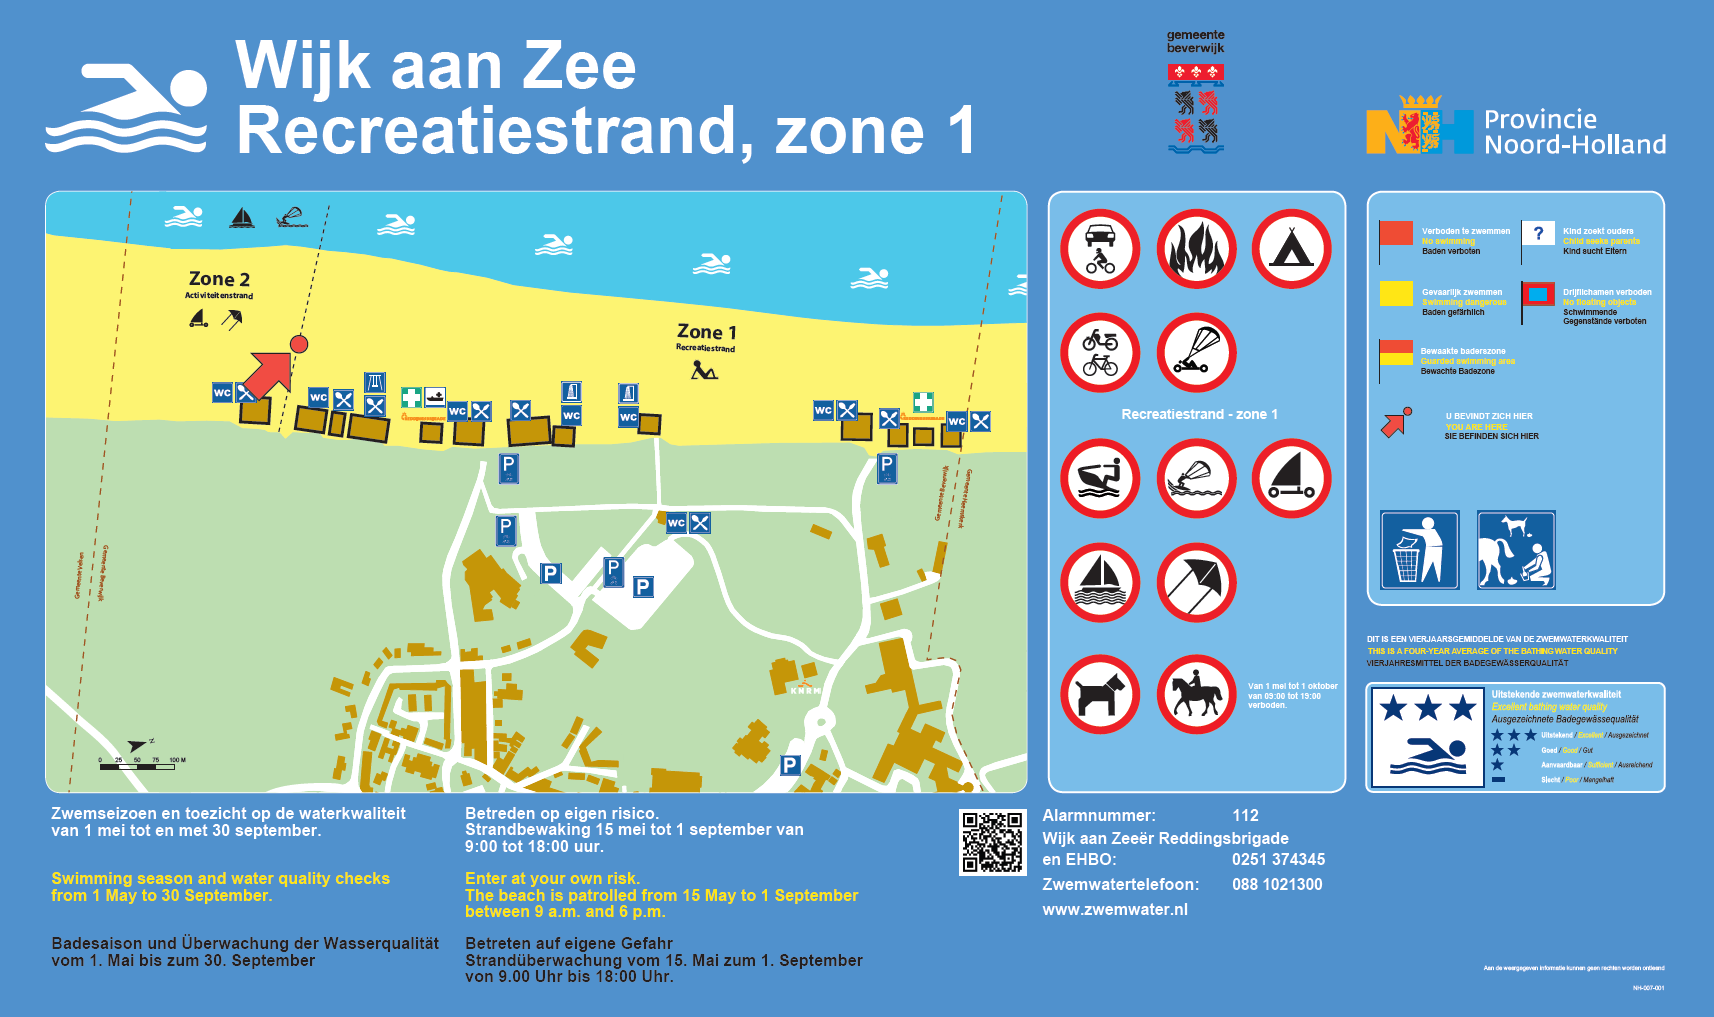 The information board at the swimming location Beverwijk, Wijk aan Zee